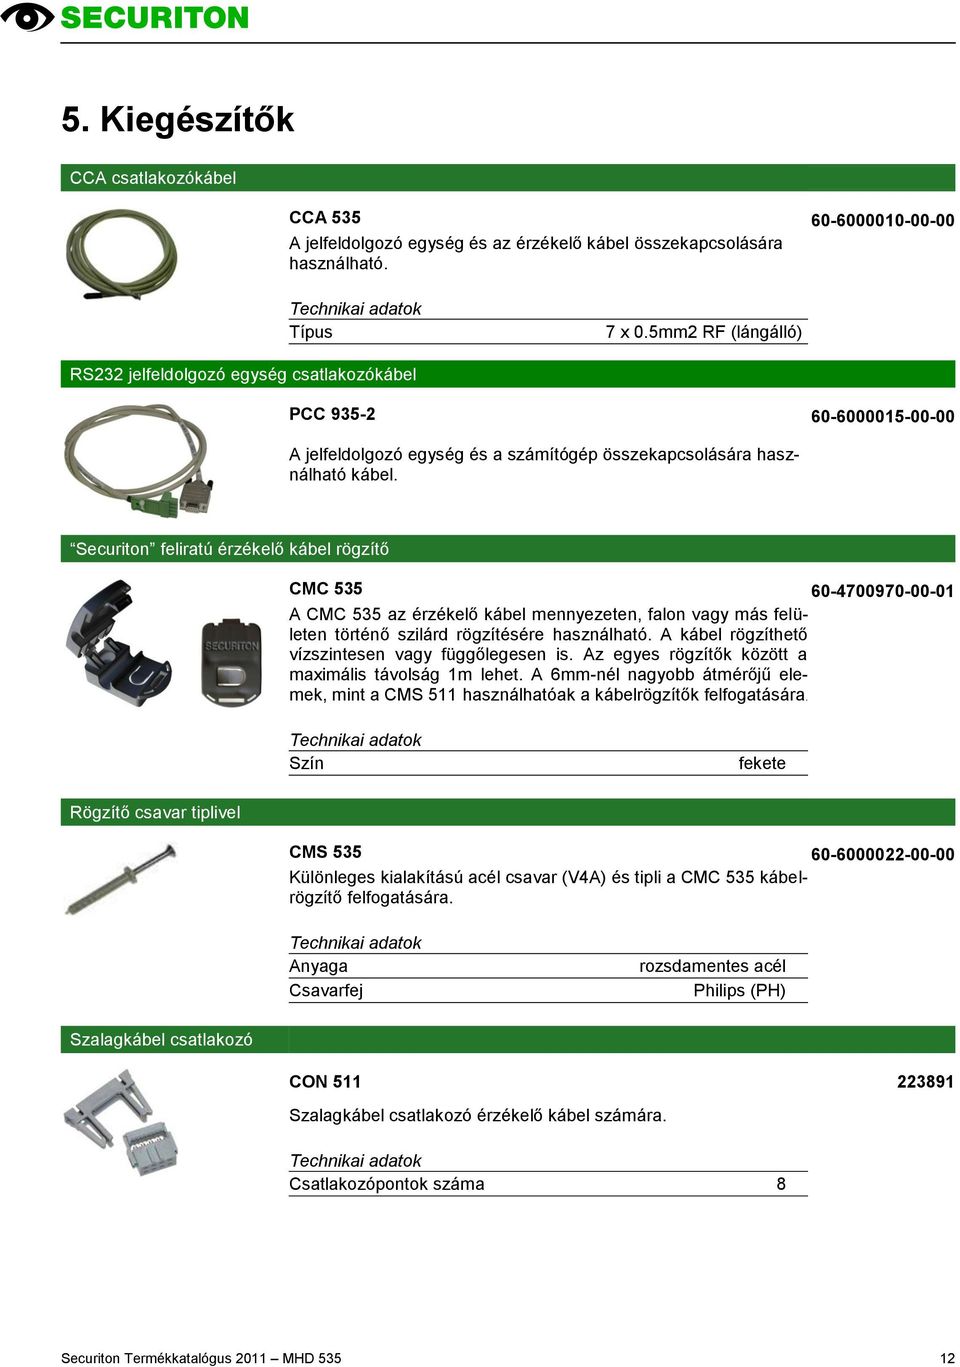 Securiton feliratú érzékelő kábel rögzítő CMC 535 60-4700970-00-01 A CMC 535 az érzékelő kábel mennyezeten, falon vagy más felületen történő szilárd rögzítésére használható.